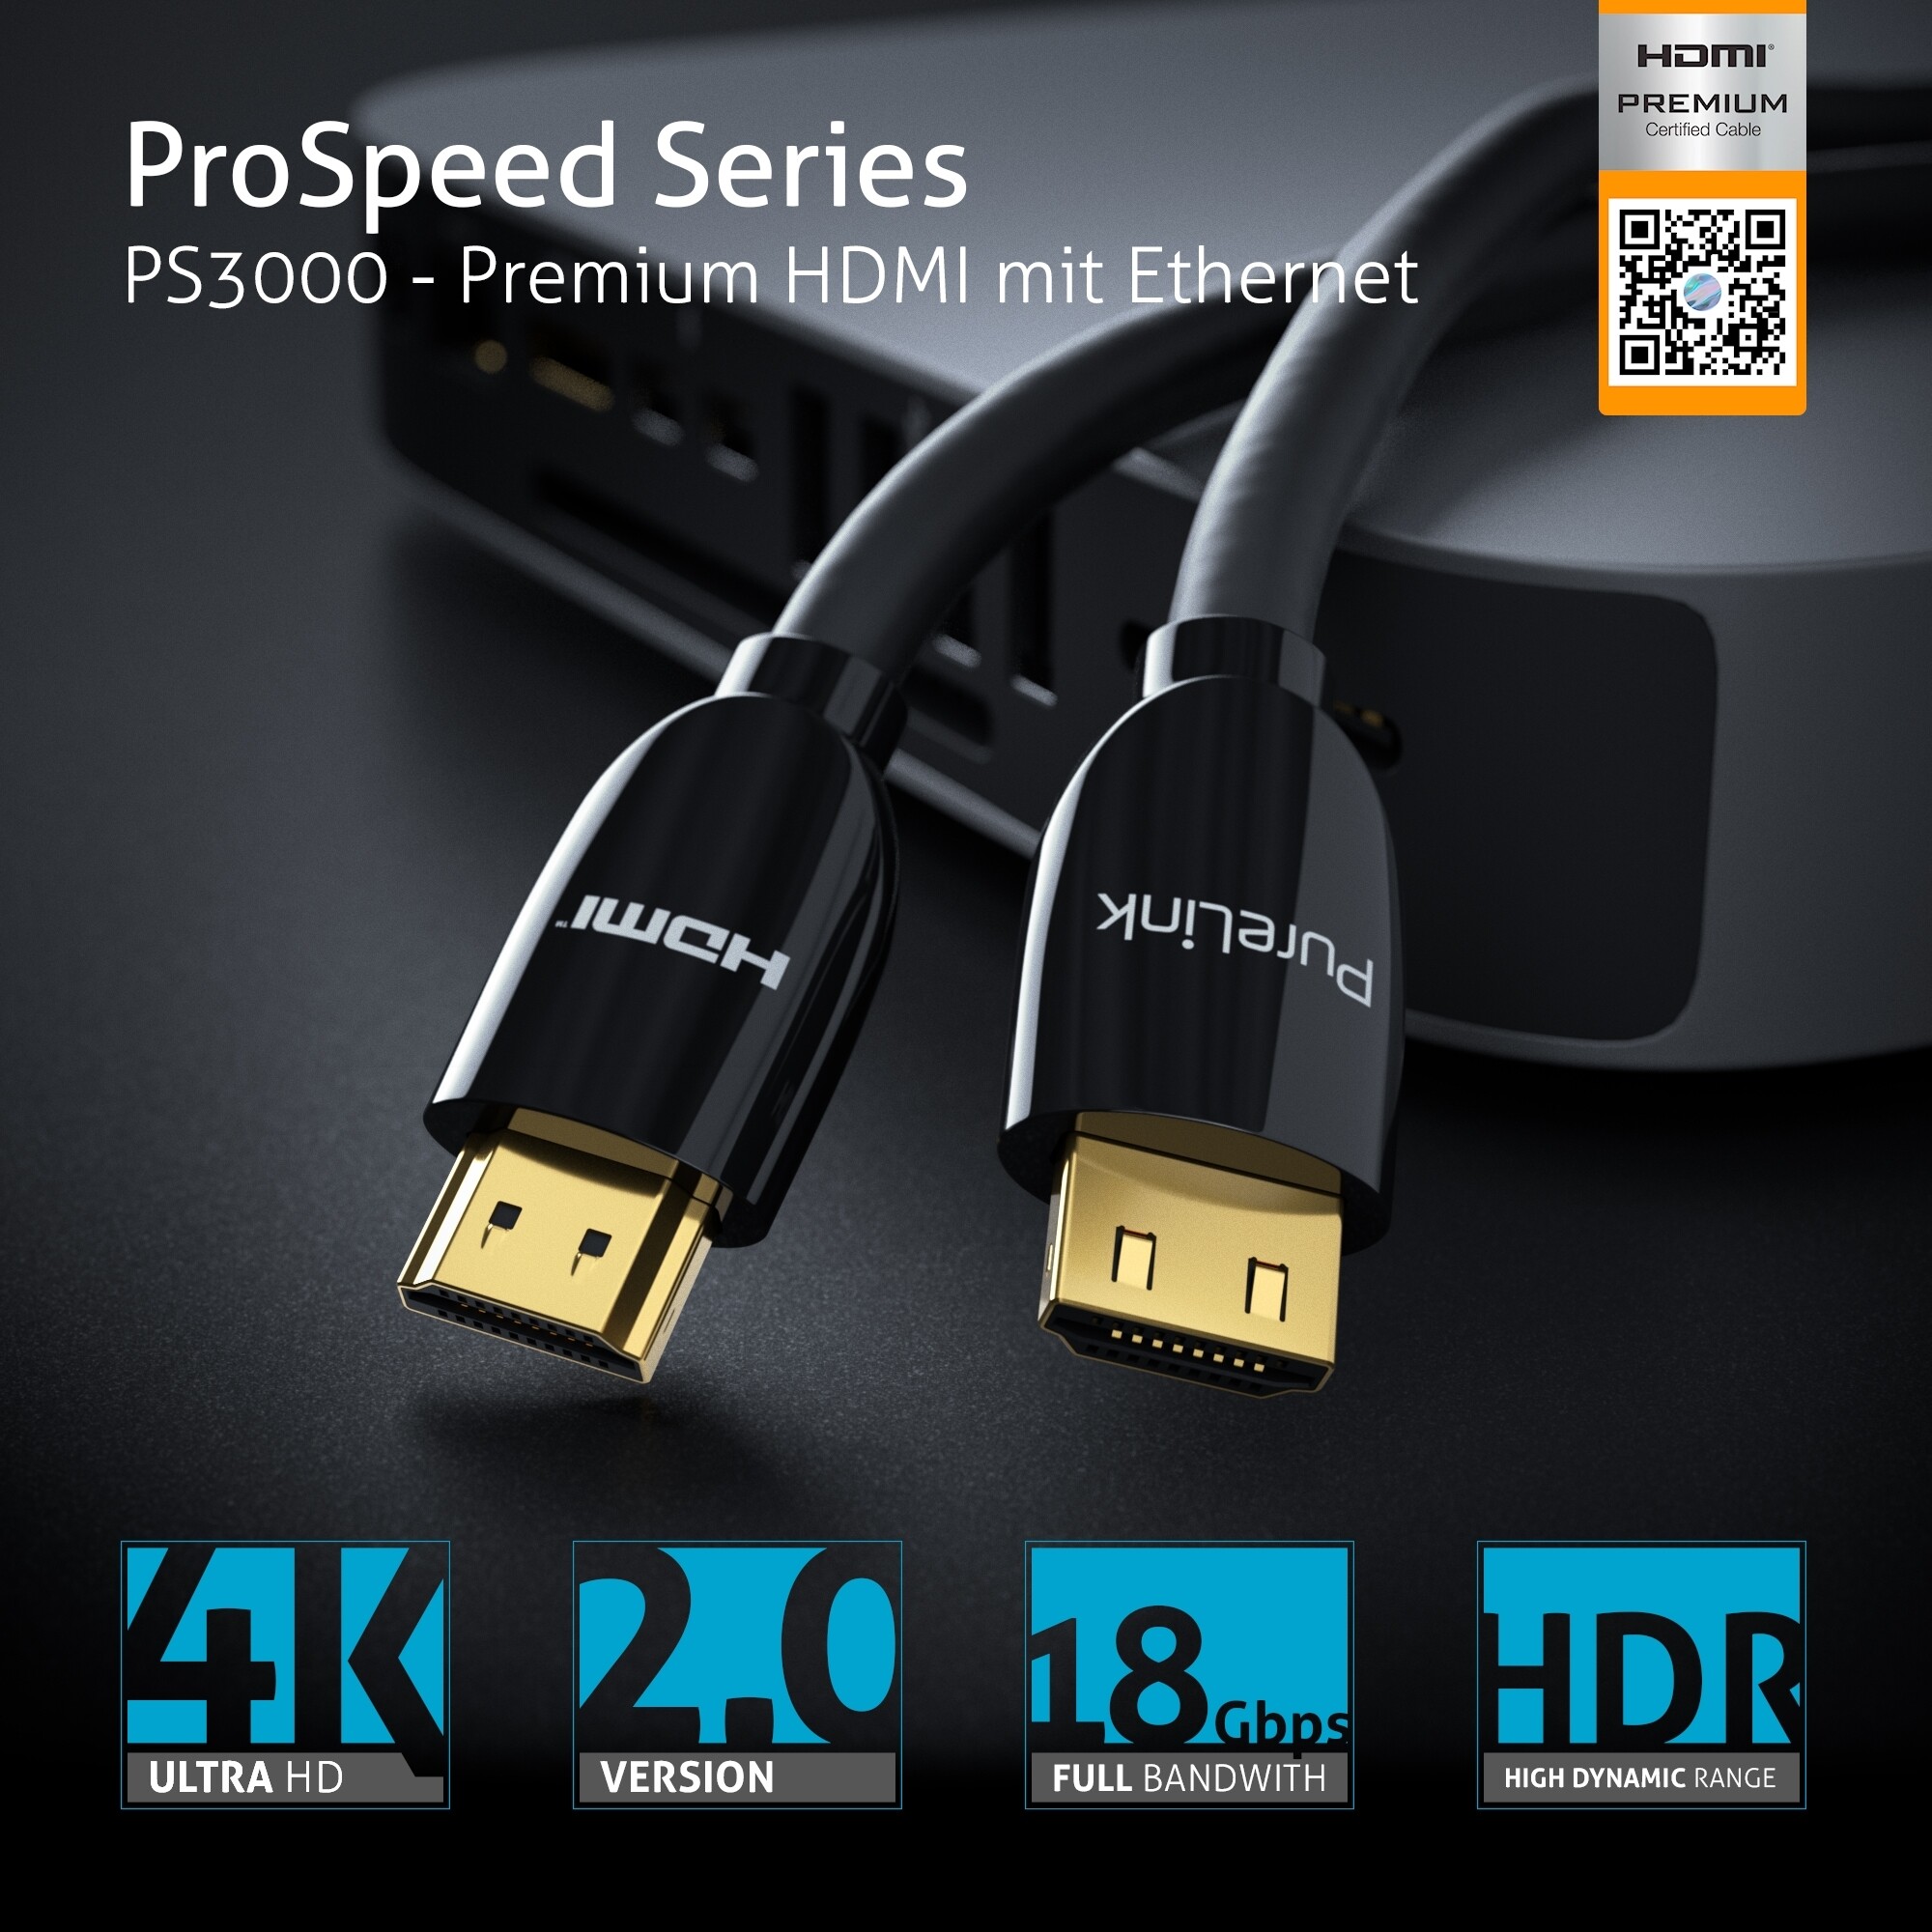 PureLink-PS3000-Premium-Highspeed-HDMI-Kabel-mit-Ethernet-Zertifiziert-4-00m